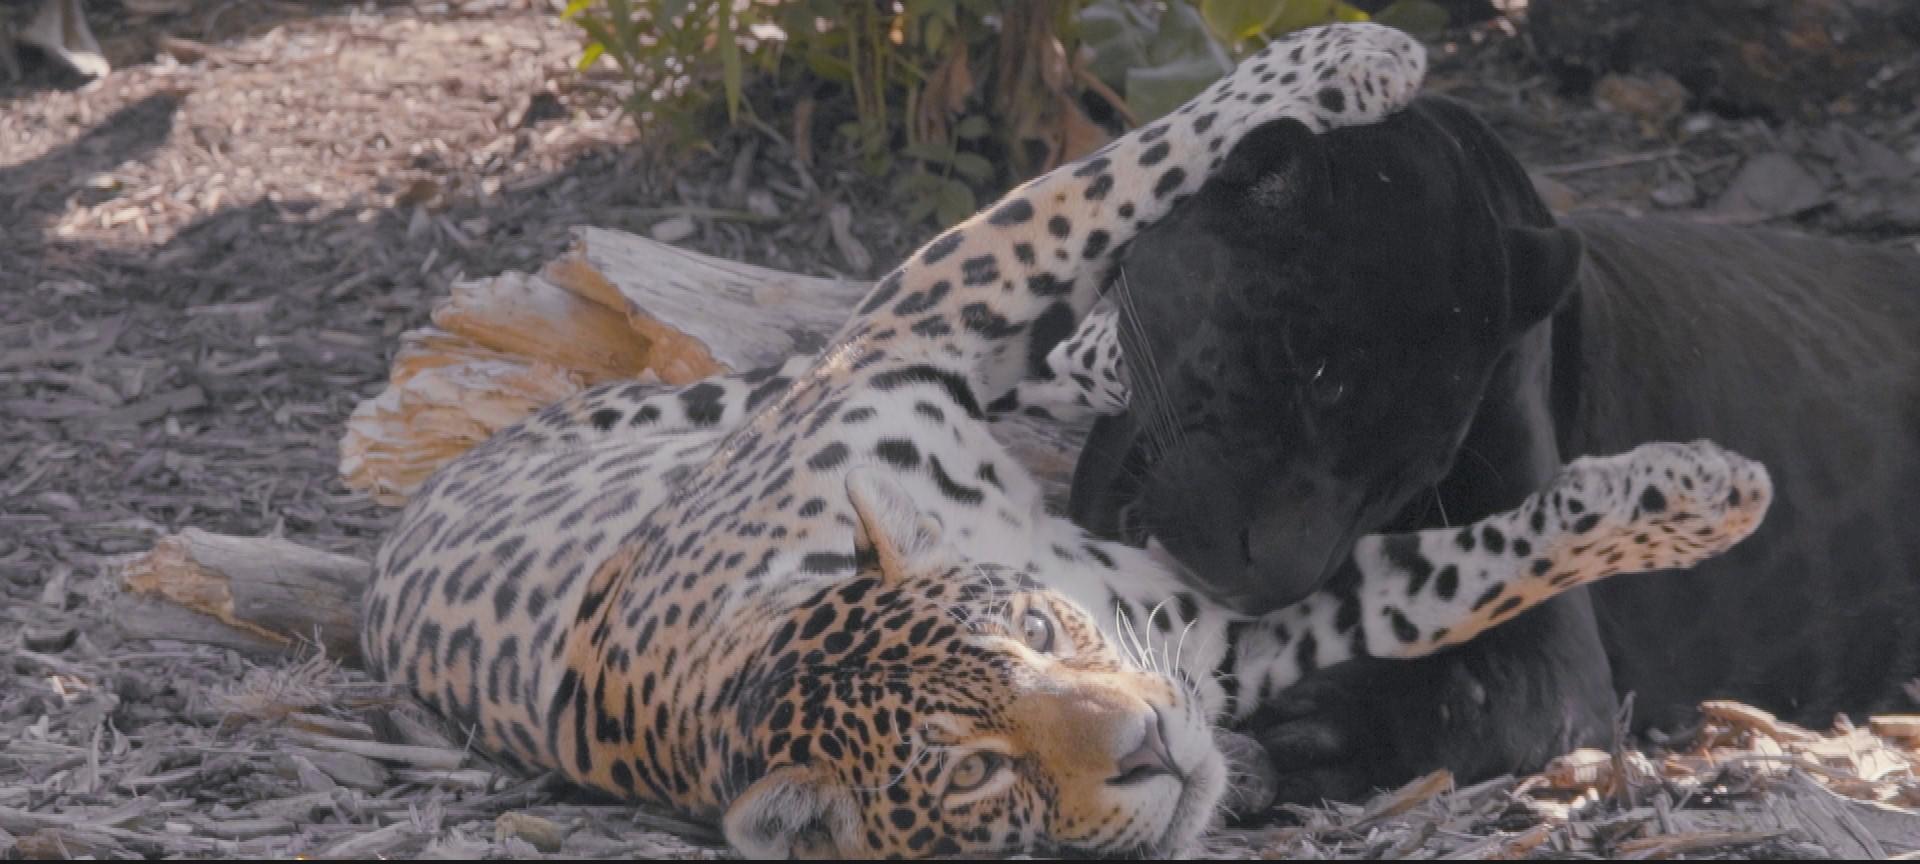 Deux jaguars, Aramis et Simara, sont "enlacés", photo extraite du documentaire Un amour de zoo